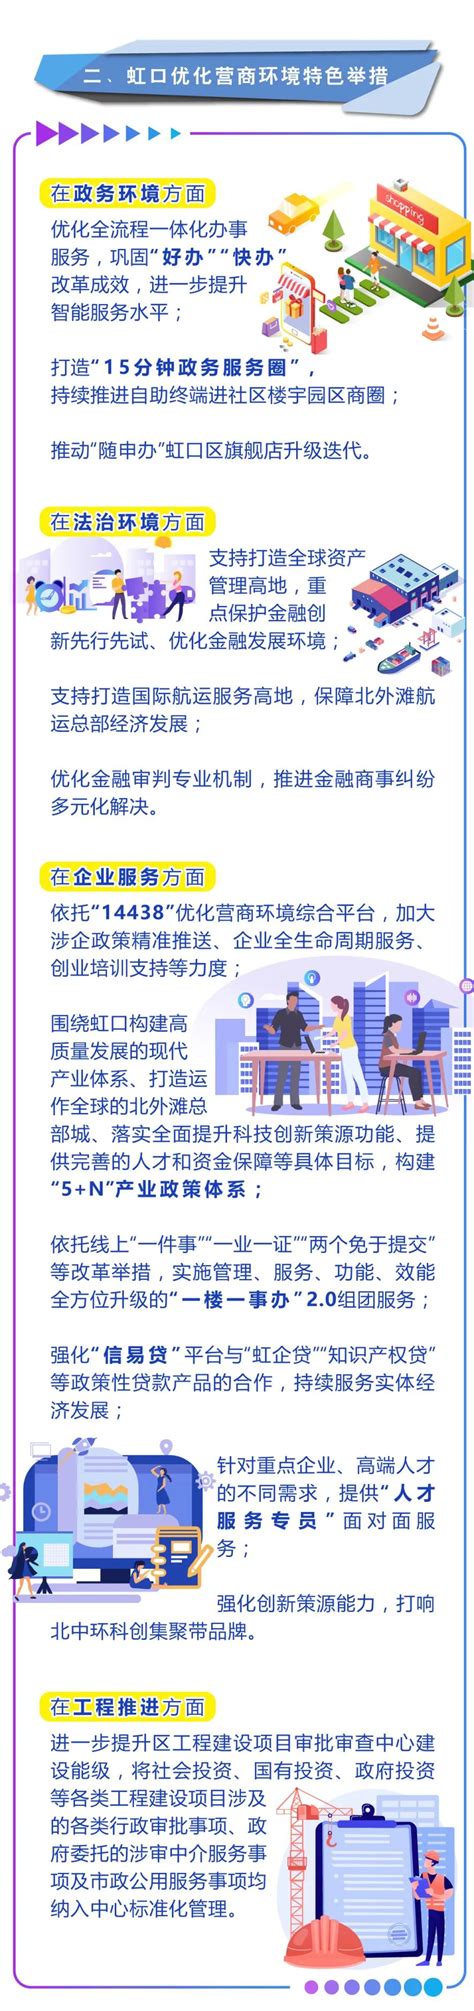 虹口区博士后创新实践基地正式授牌-上海市虹口区人民政府